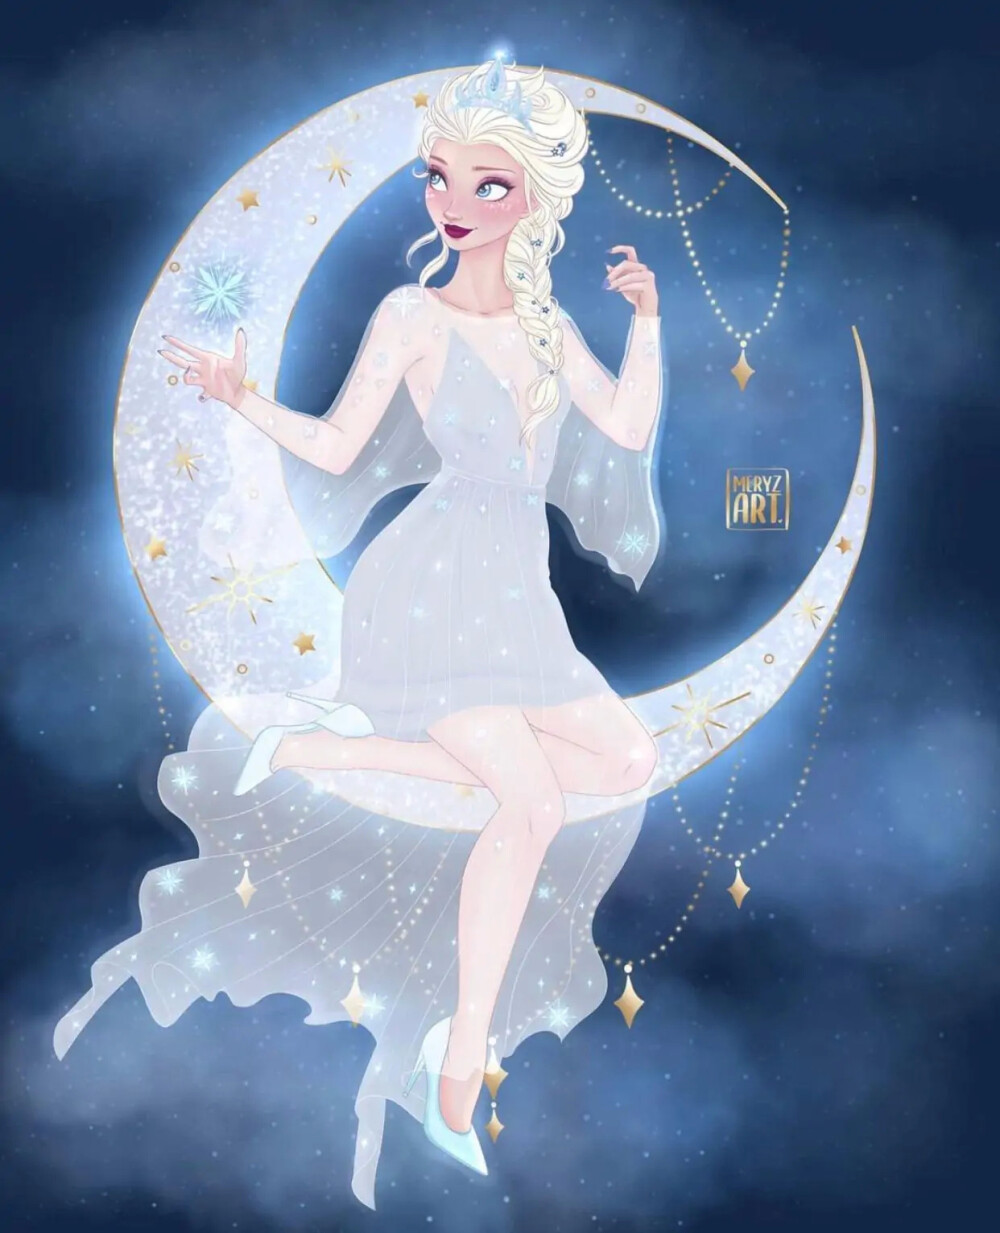 迪士尼公主×月亮公主
画师:MERYZ.ART